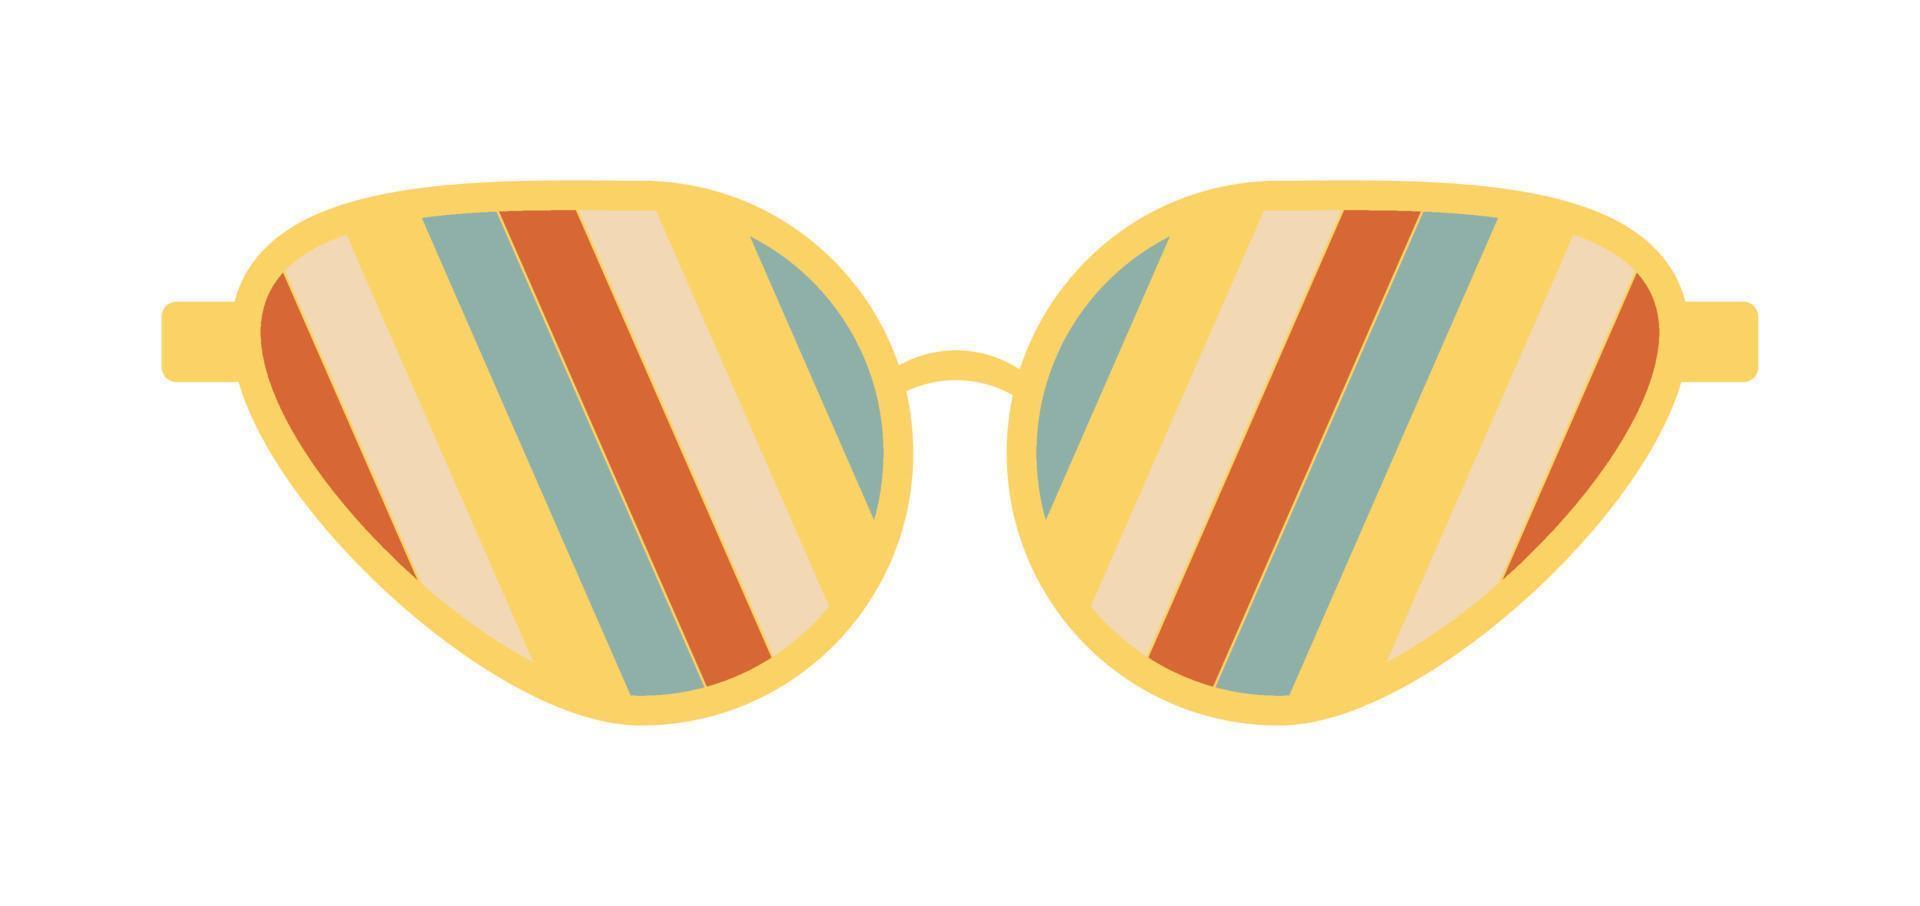 gafas de sol psicodélicas al estilo de los años 70. elementos gráficos retro maravillosos de gafas con arco iris, líneas y ondas. vector